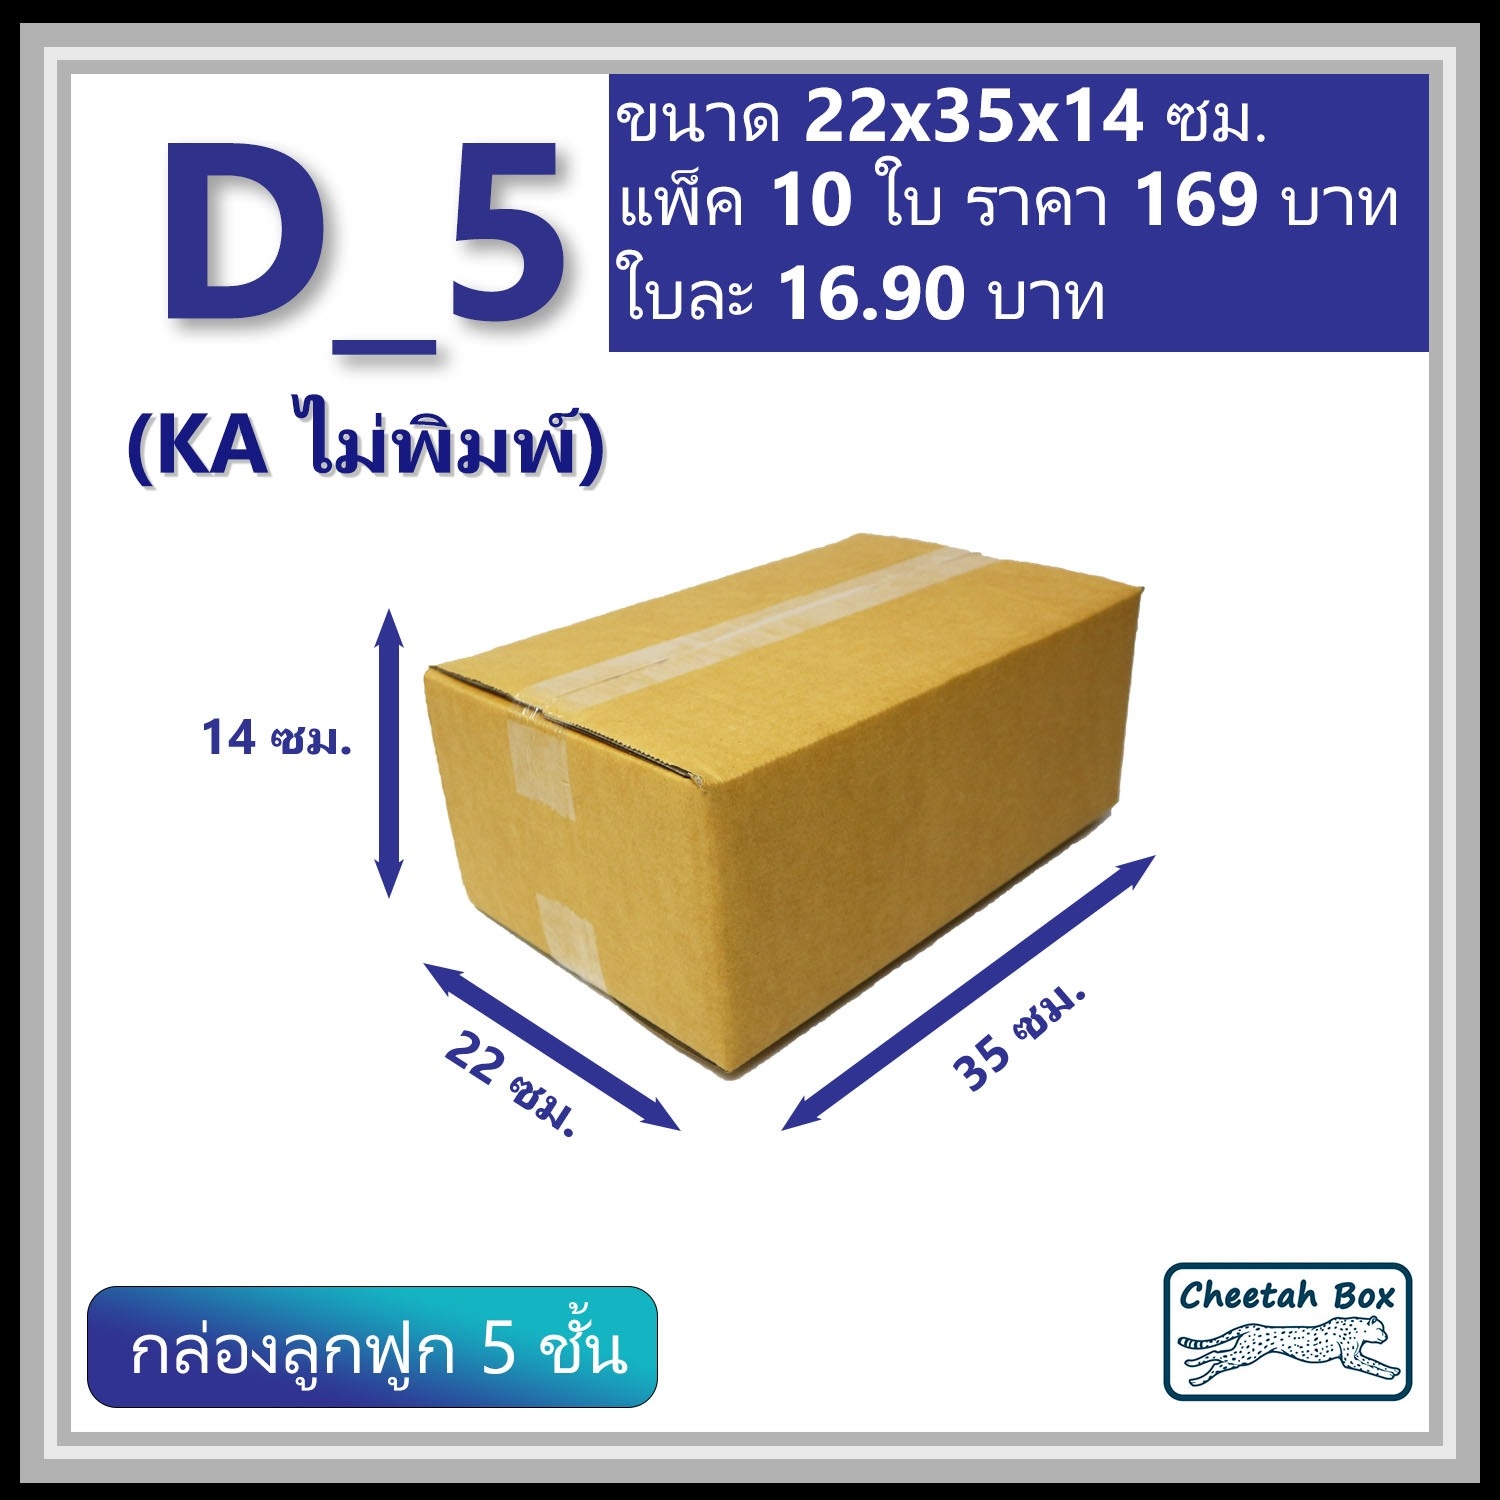 กล่องพัสดุ 5 ชั้น D_5 (KA125) ไม่พิมพ์ ลูกฟูก 5 ชั้น (Post Box)  ขนาด 22W x 35L x 14H cm.